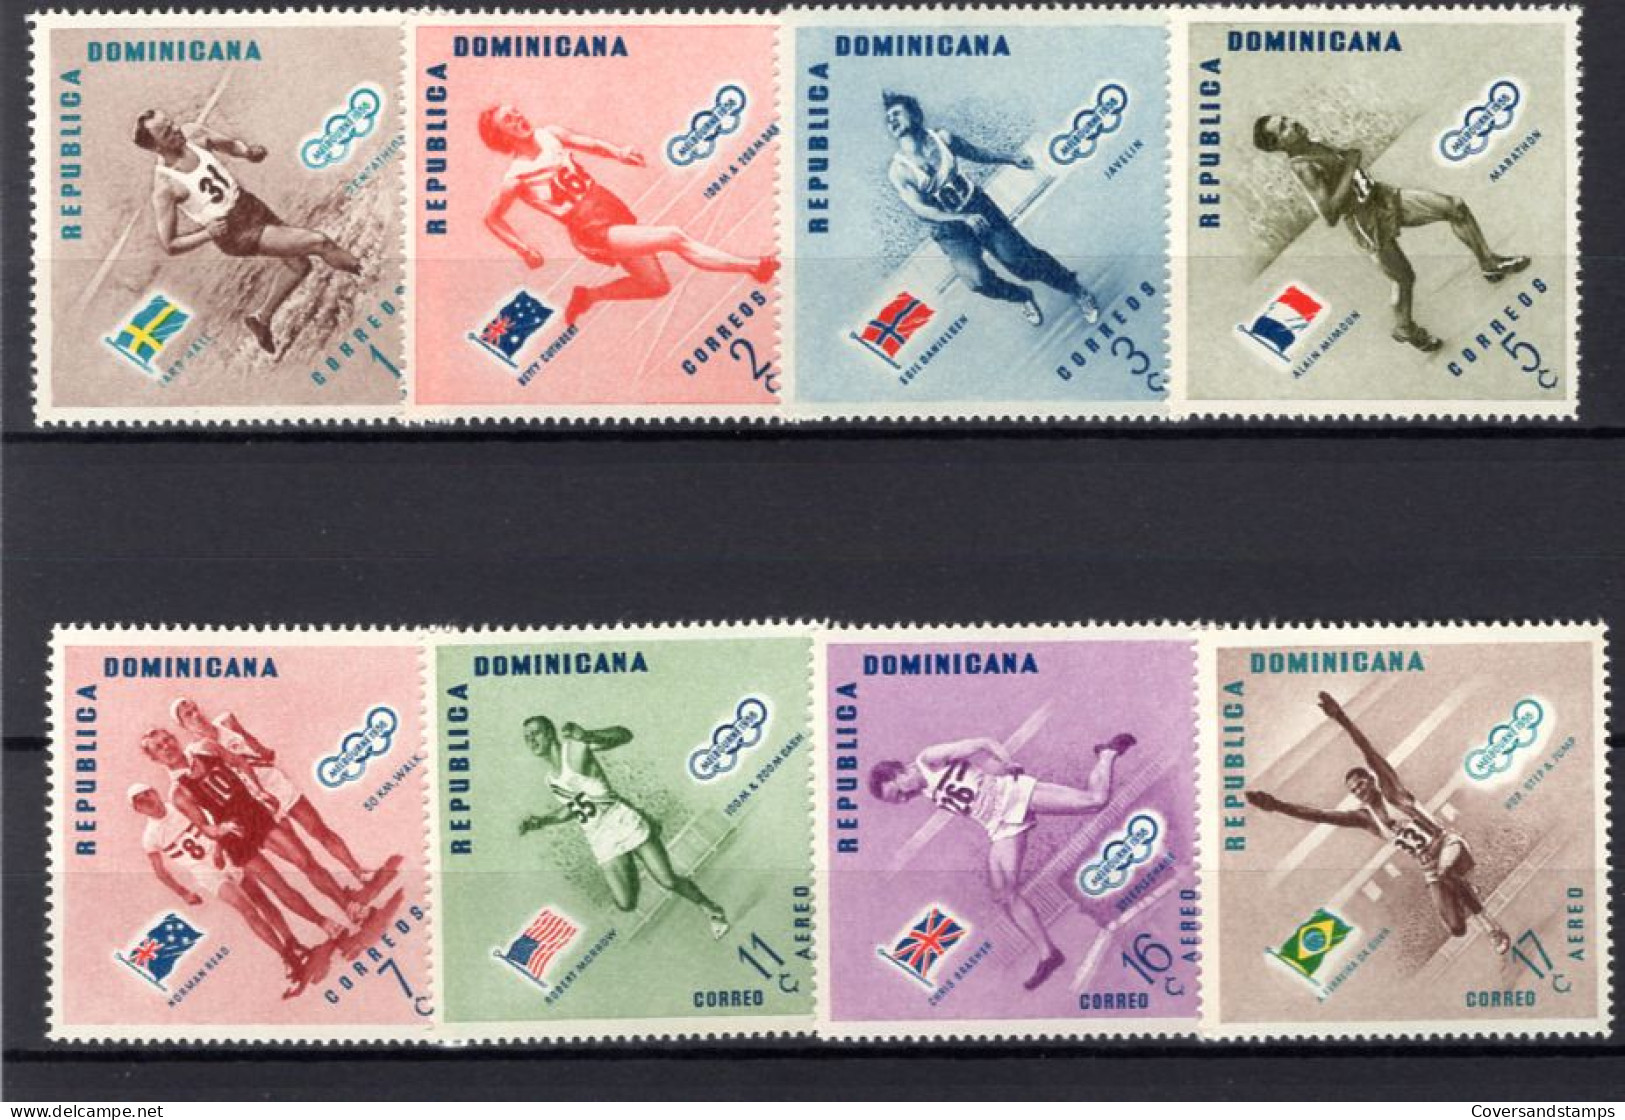  Republica Dominicana - Melbourne 1956 - Ete 1956: Melbourne